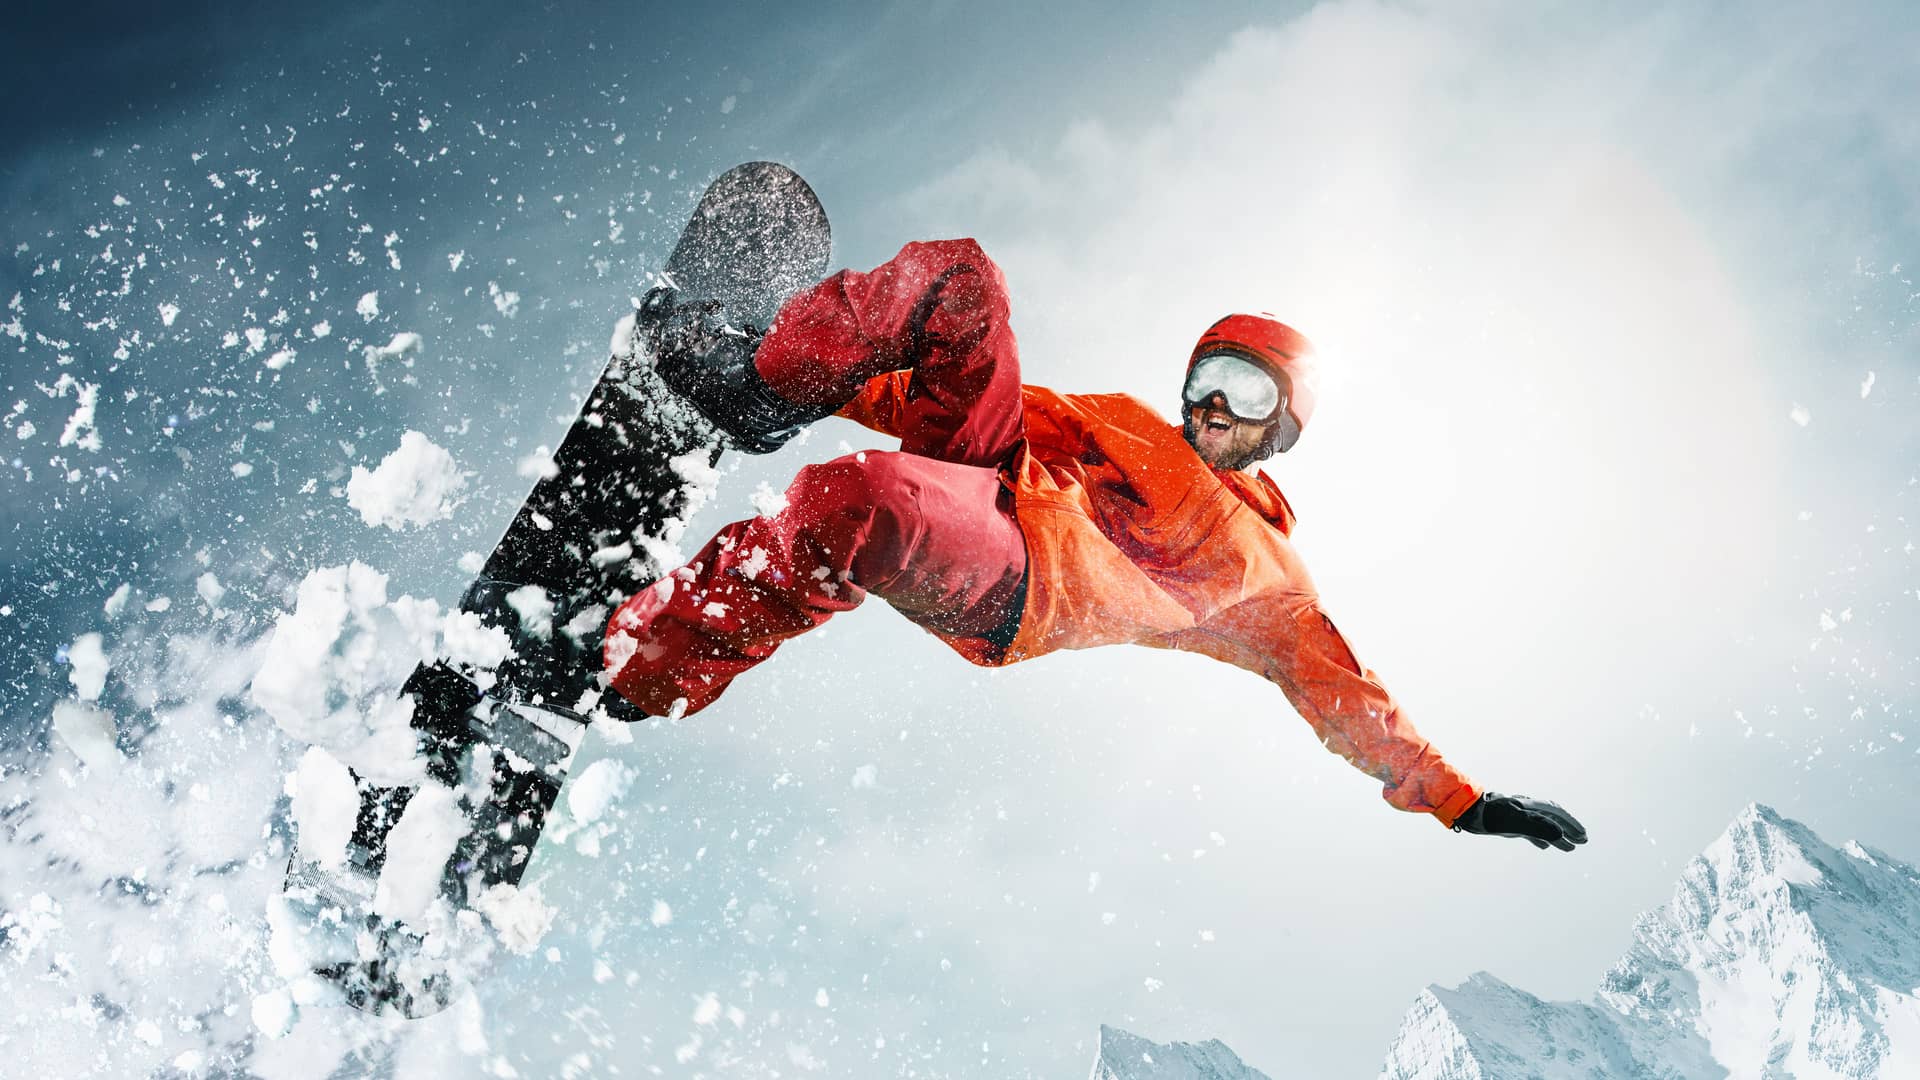 Snowboarder esquiando fuera de pista con seguro de salud de axa 